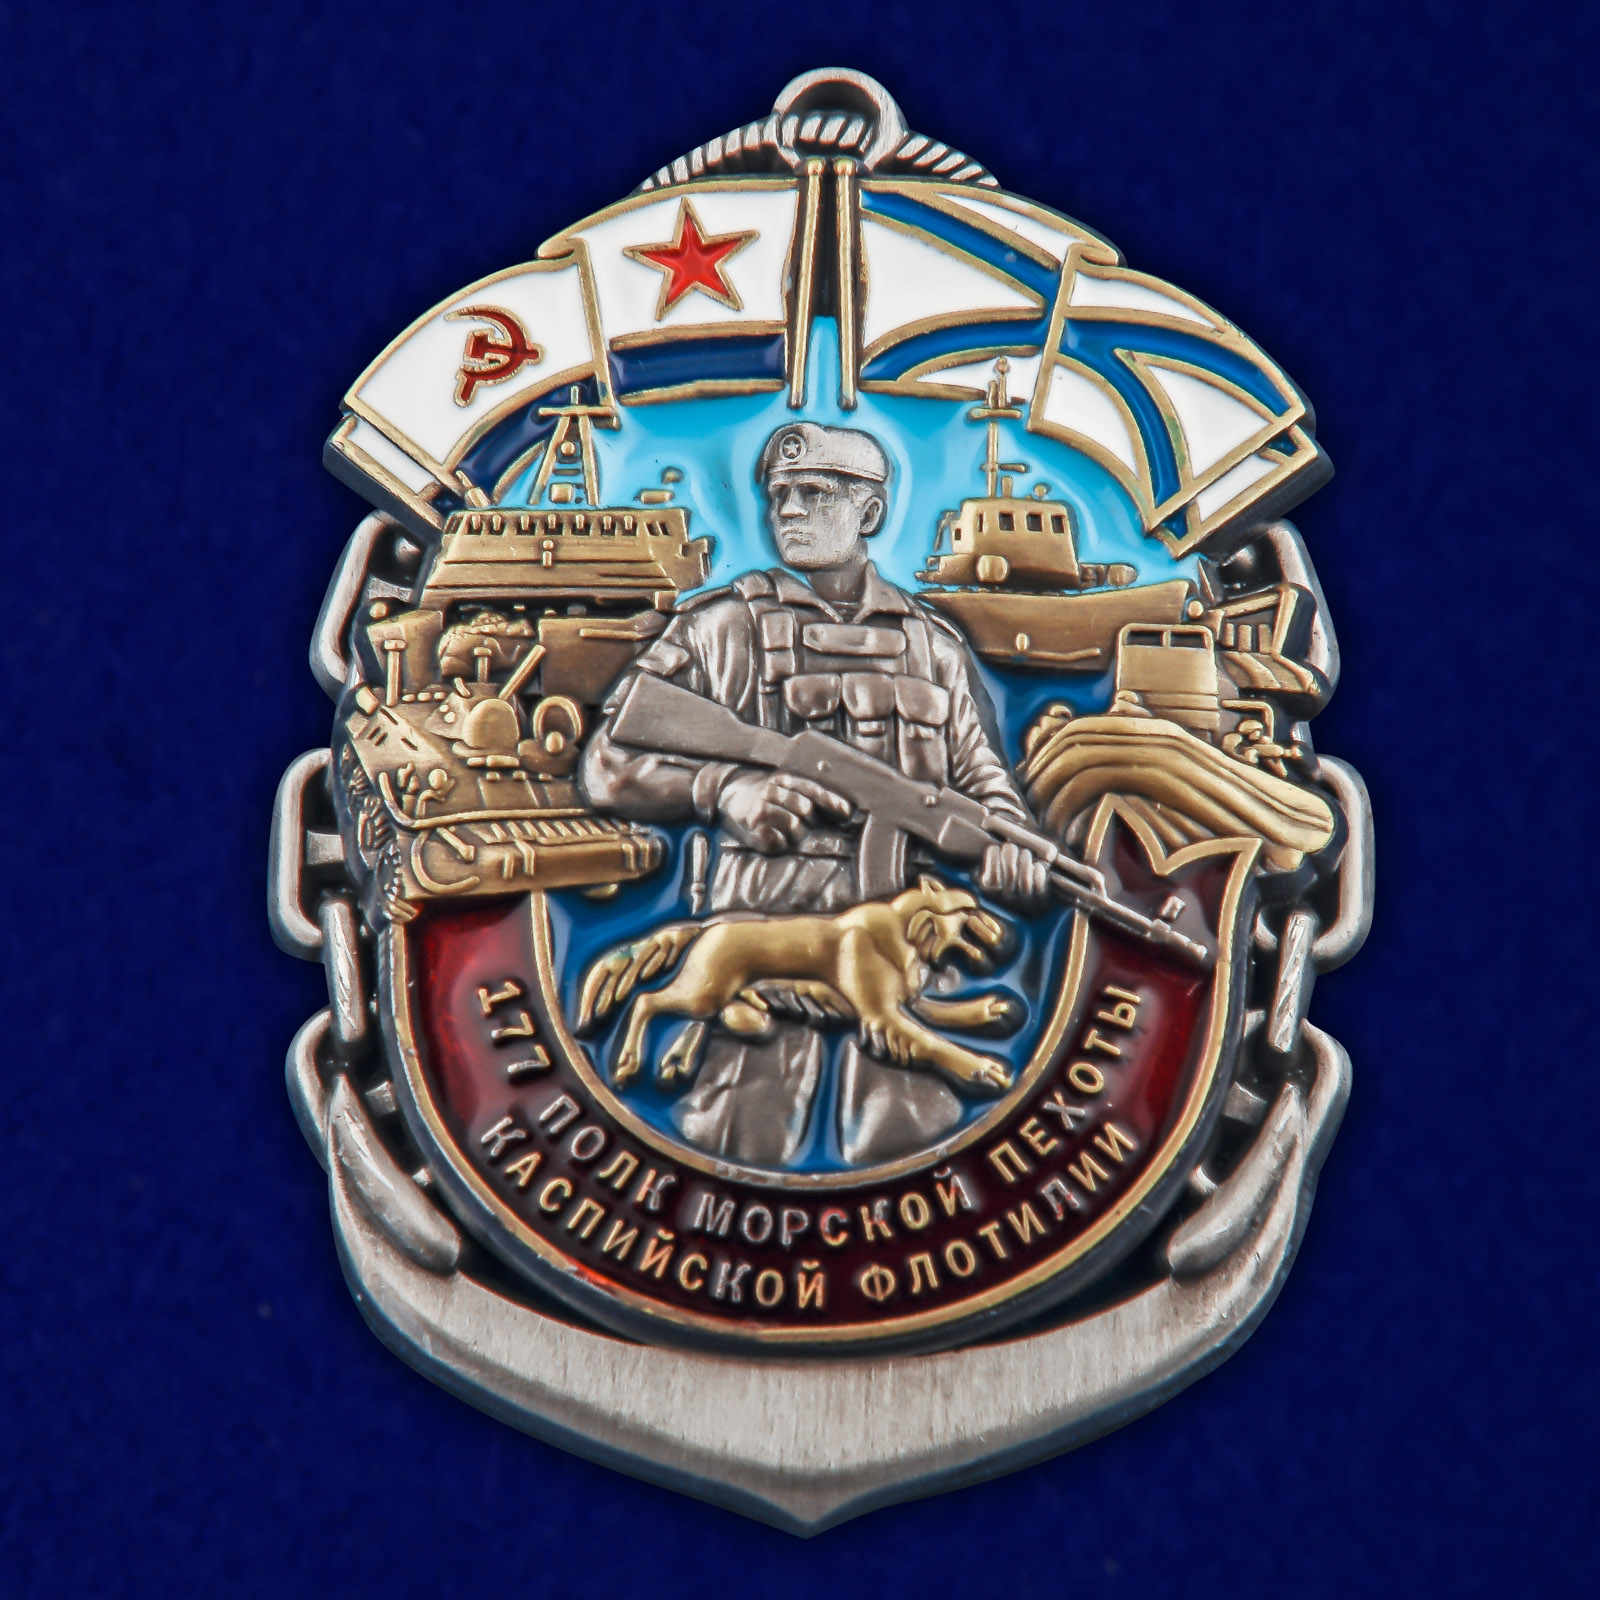 Купить нагрудный знак 177-й полк морской пехоты Каспийской флотилии выгодно